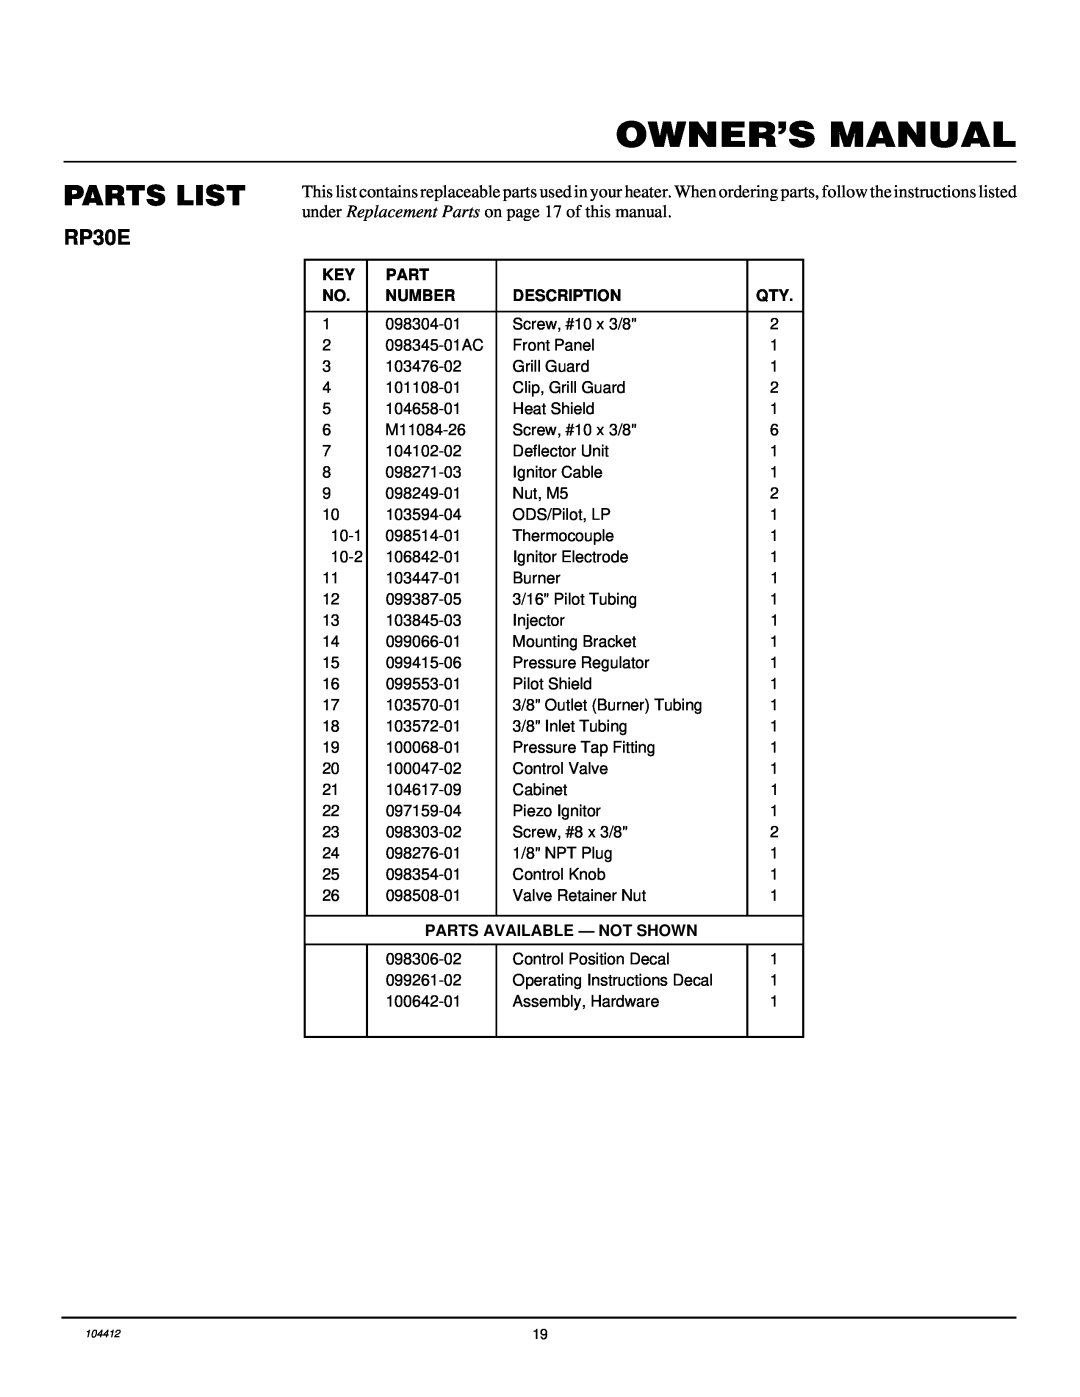 Desa CGP20B, CGP20LB, RP30E installation manual Parts List, Number, Description, Parts Available - Not Shown 